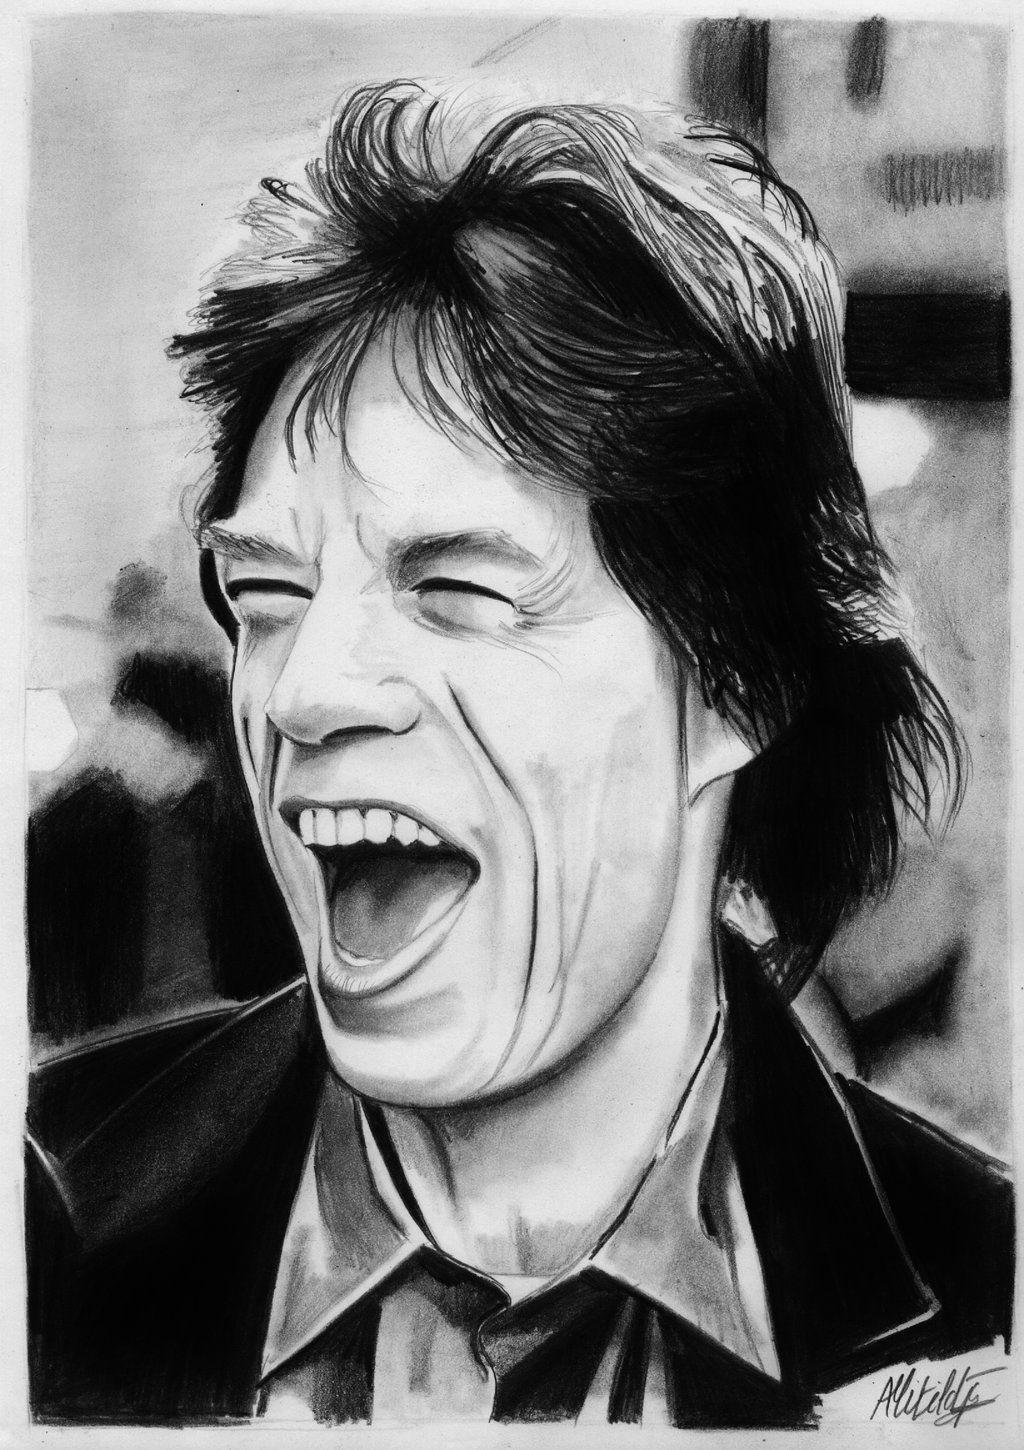 Mick Jagger drawing